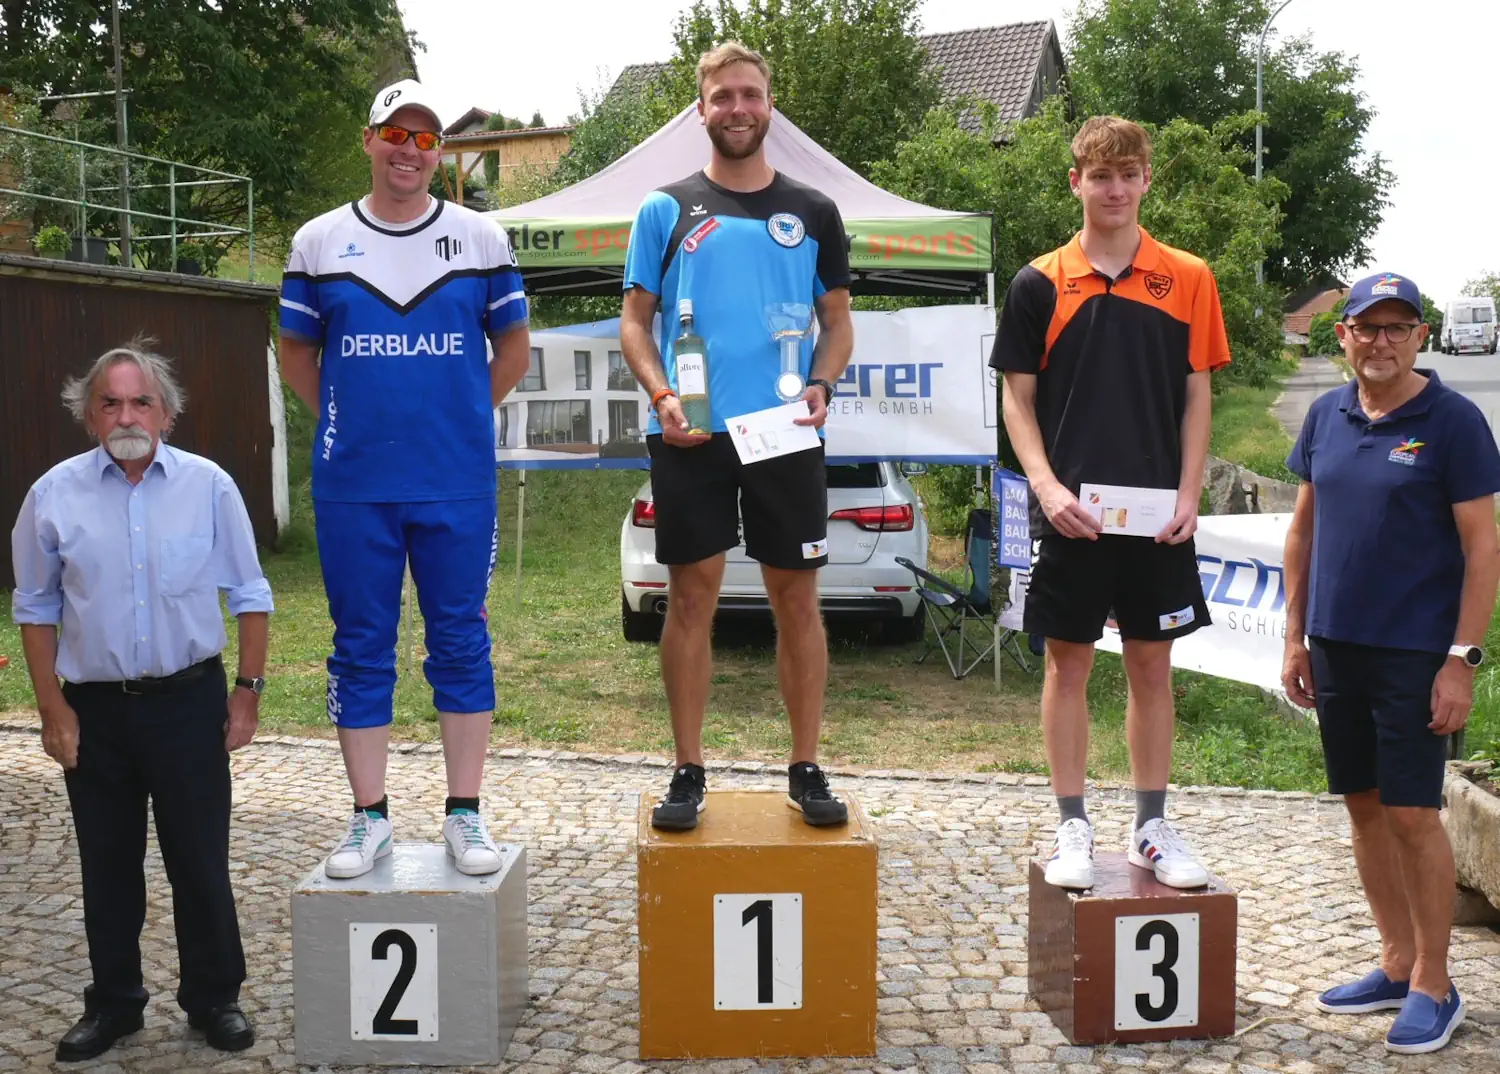 Auch den Finallauf ließ sich Maximilian Schödlbauer nicht nehmen und gewann vor Patrick Stimpfle und Jonas Neff.